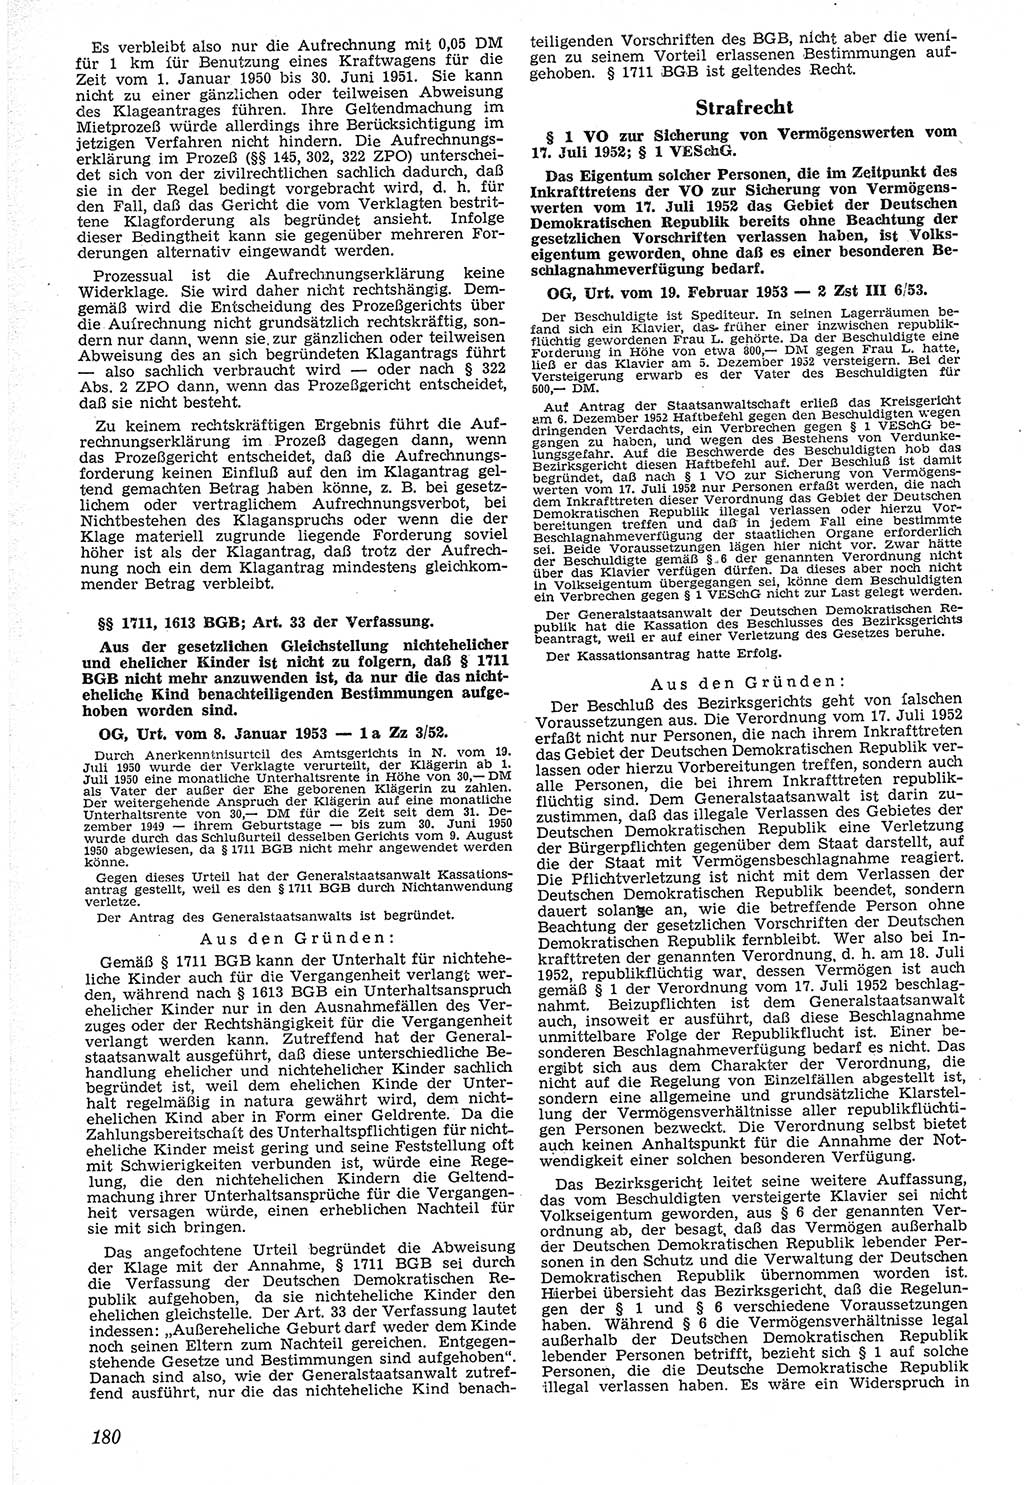 Neue Justiz (NJ), Zeitschrift für Recht und Rechtswissenschaft [Deutsche Demokratische Republik (DDR)], 7. Jahrgang 1953, Seite 180 (NJ DDR 1953, S. 180)